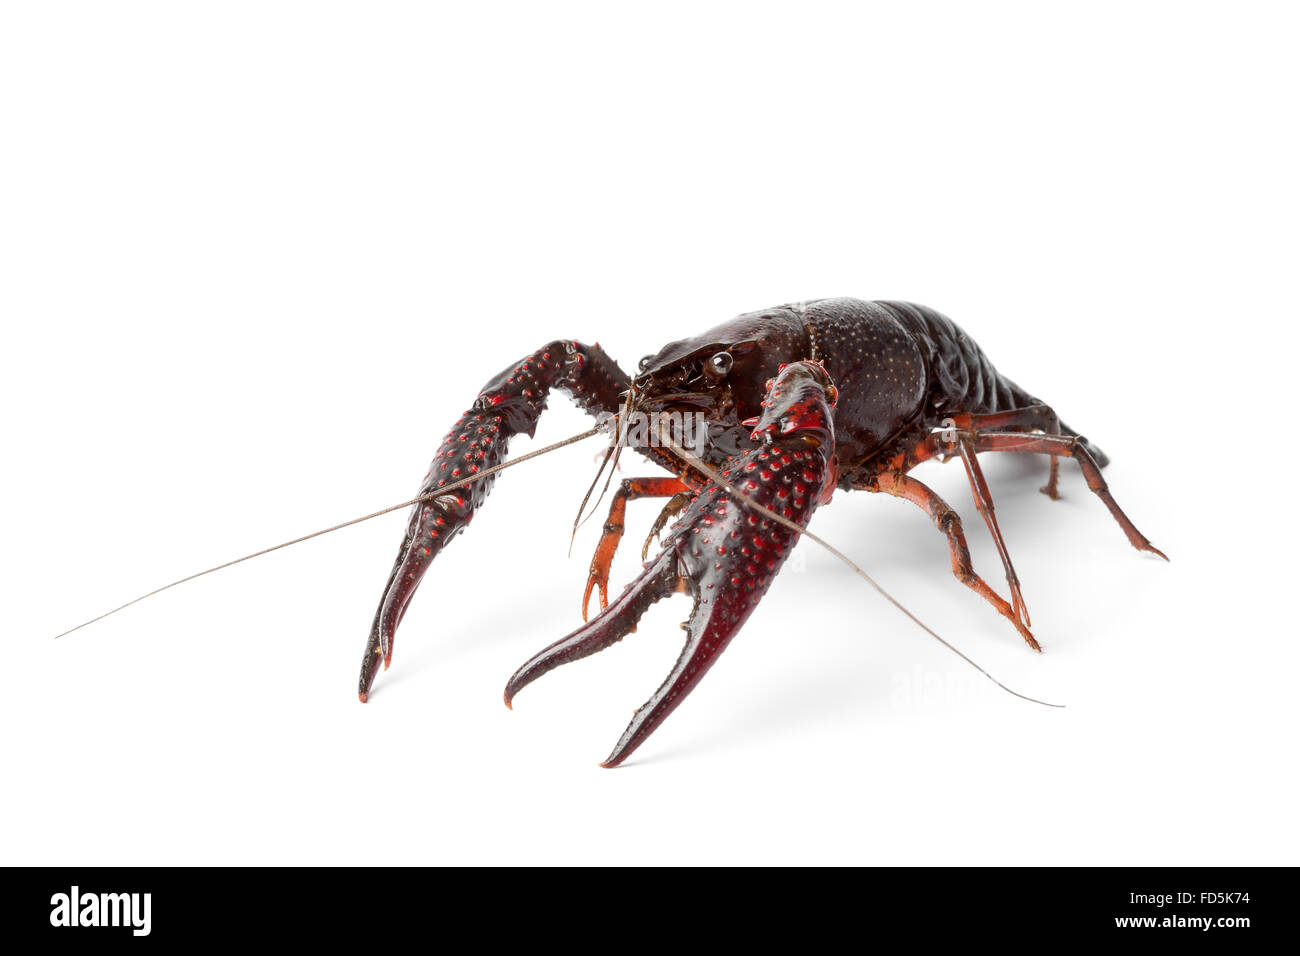 Fresh raw freshwater crayfish on white background Stock Photo